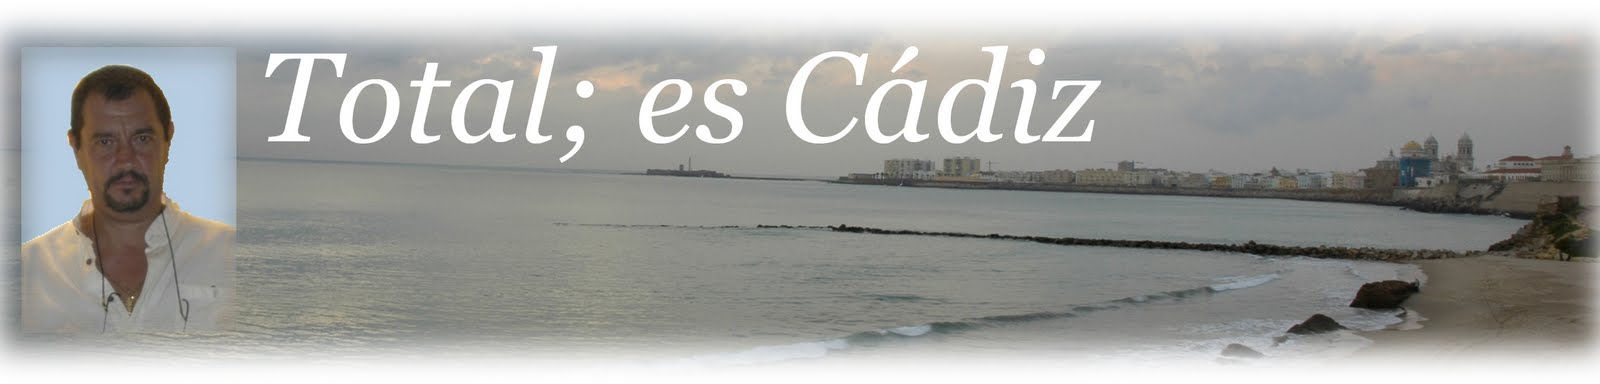 Total, esto es Cádiz.